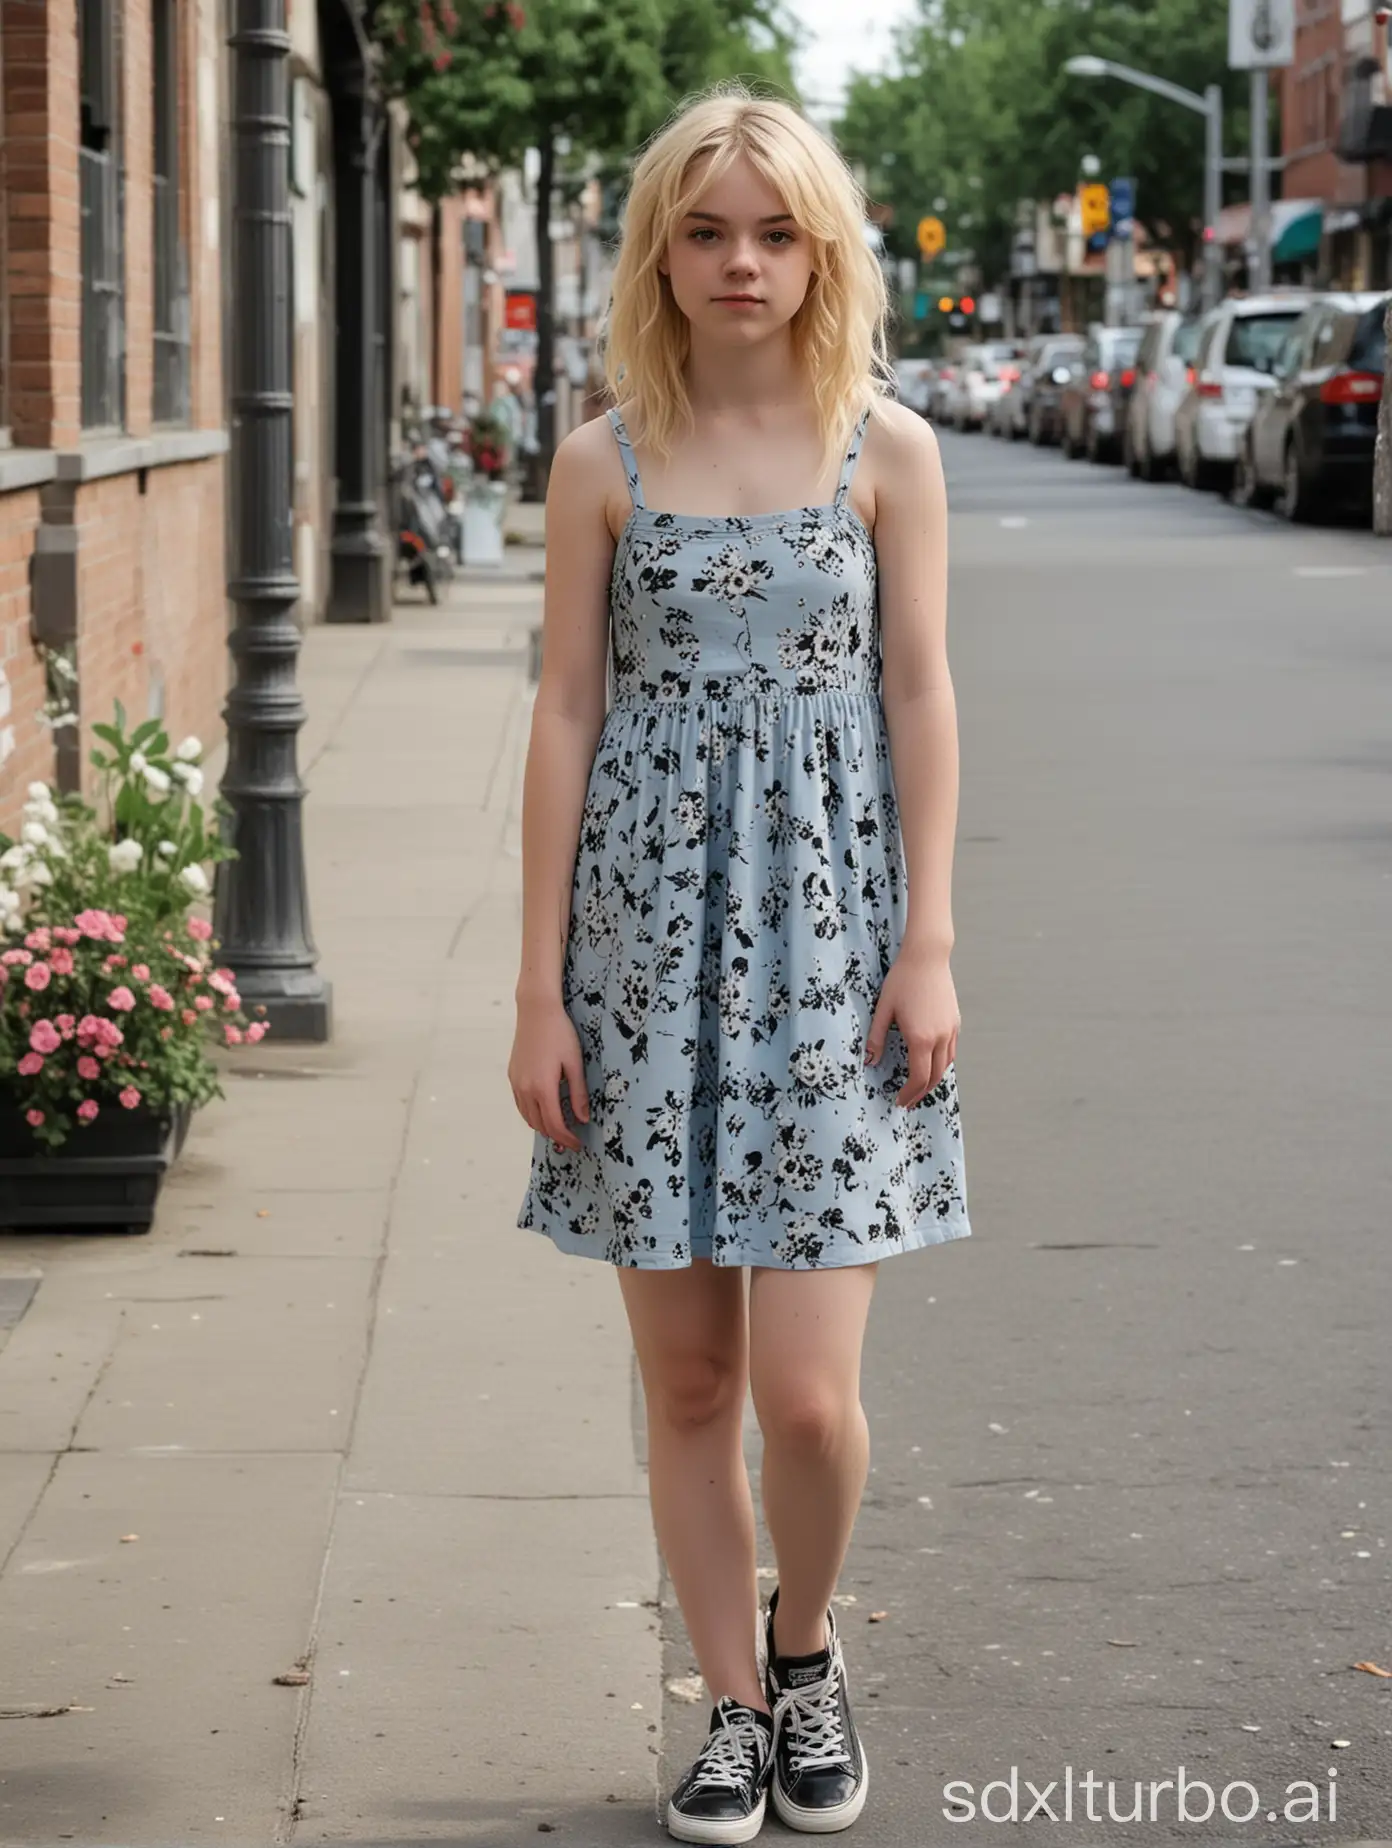 Blonde-Teen-Femboy-Strolling-in-Floral-Dress-on-Busy-Sidewalk